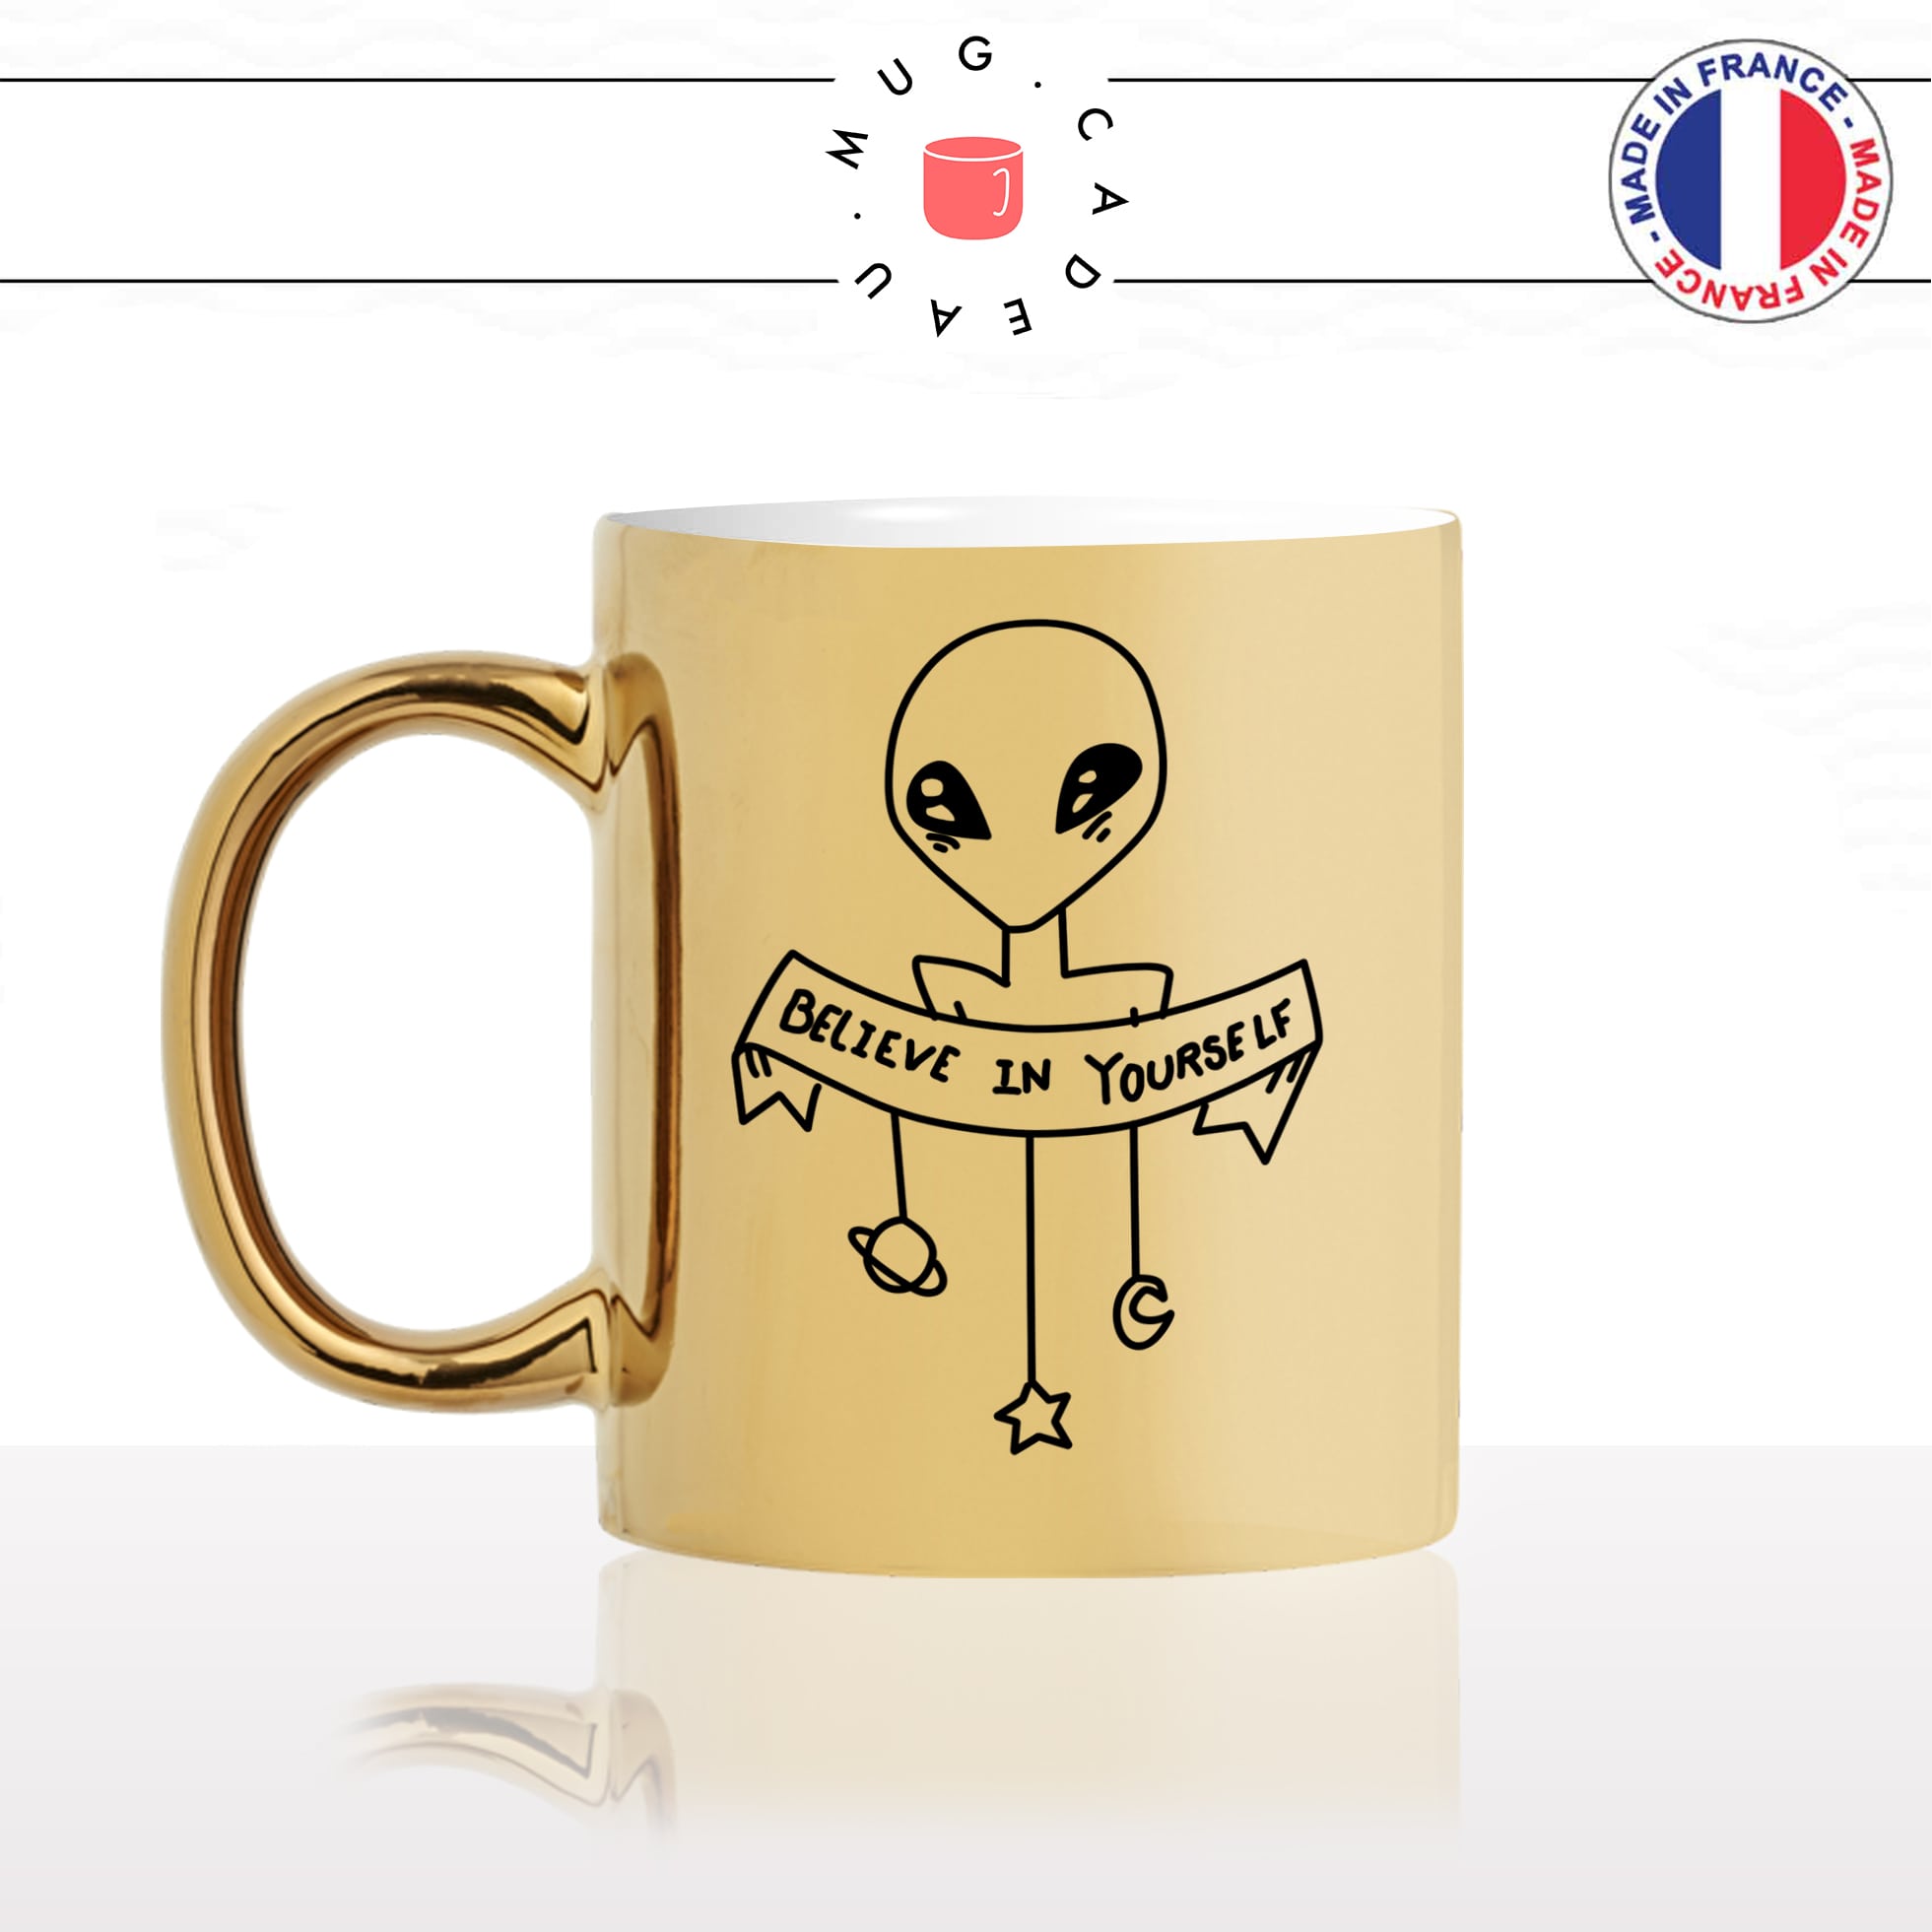 mug-tasse-or-doré-gold-alien-espace-ovni-believe-in-yourself-e.t-extra-terrestre-idée-cadeau-drole-original-fun-café-thé-personnalisé-min